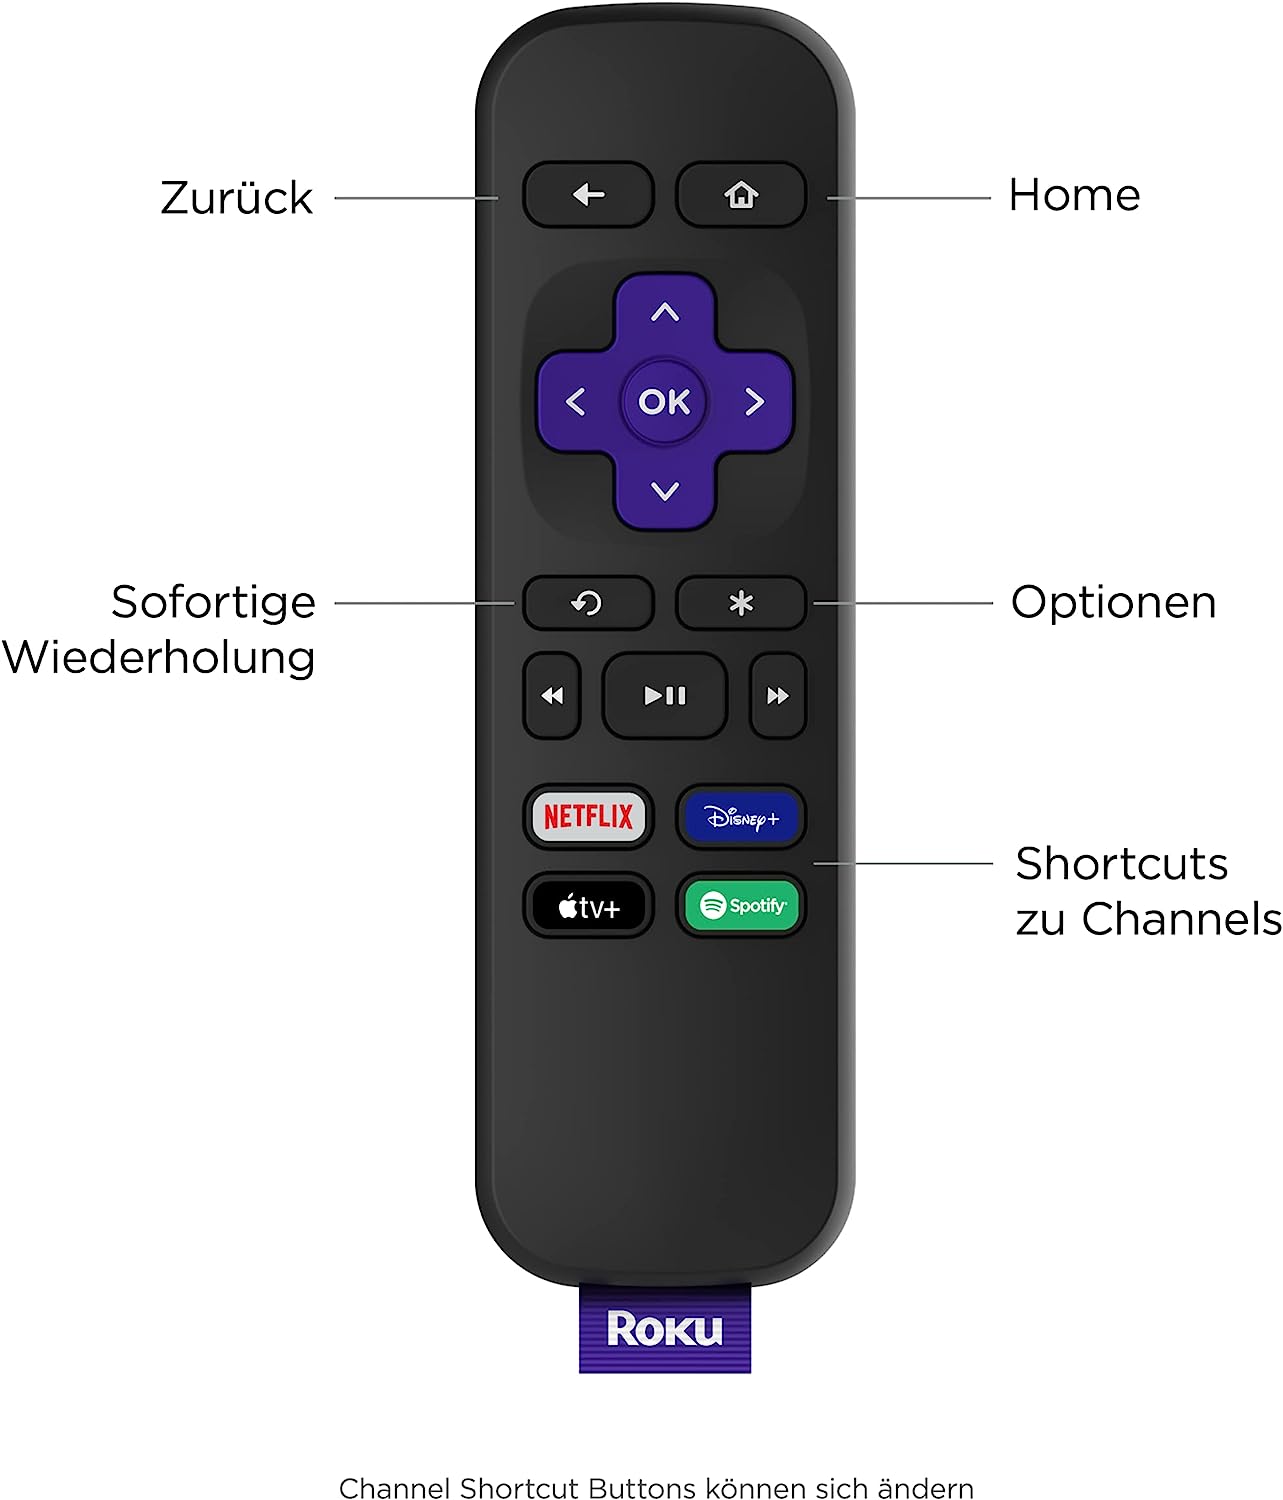 Roku Express | HD-Streaming Media Player | Funktioniert nur in Deutschland